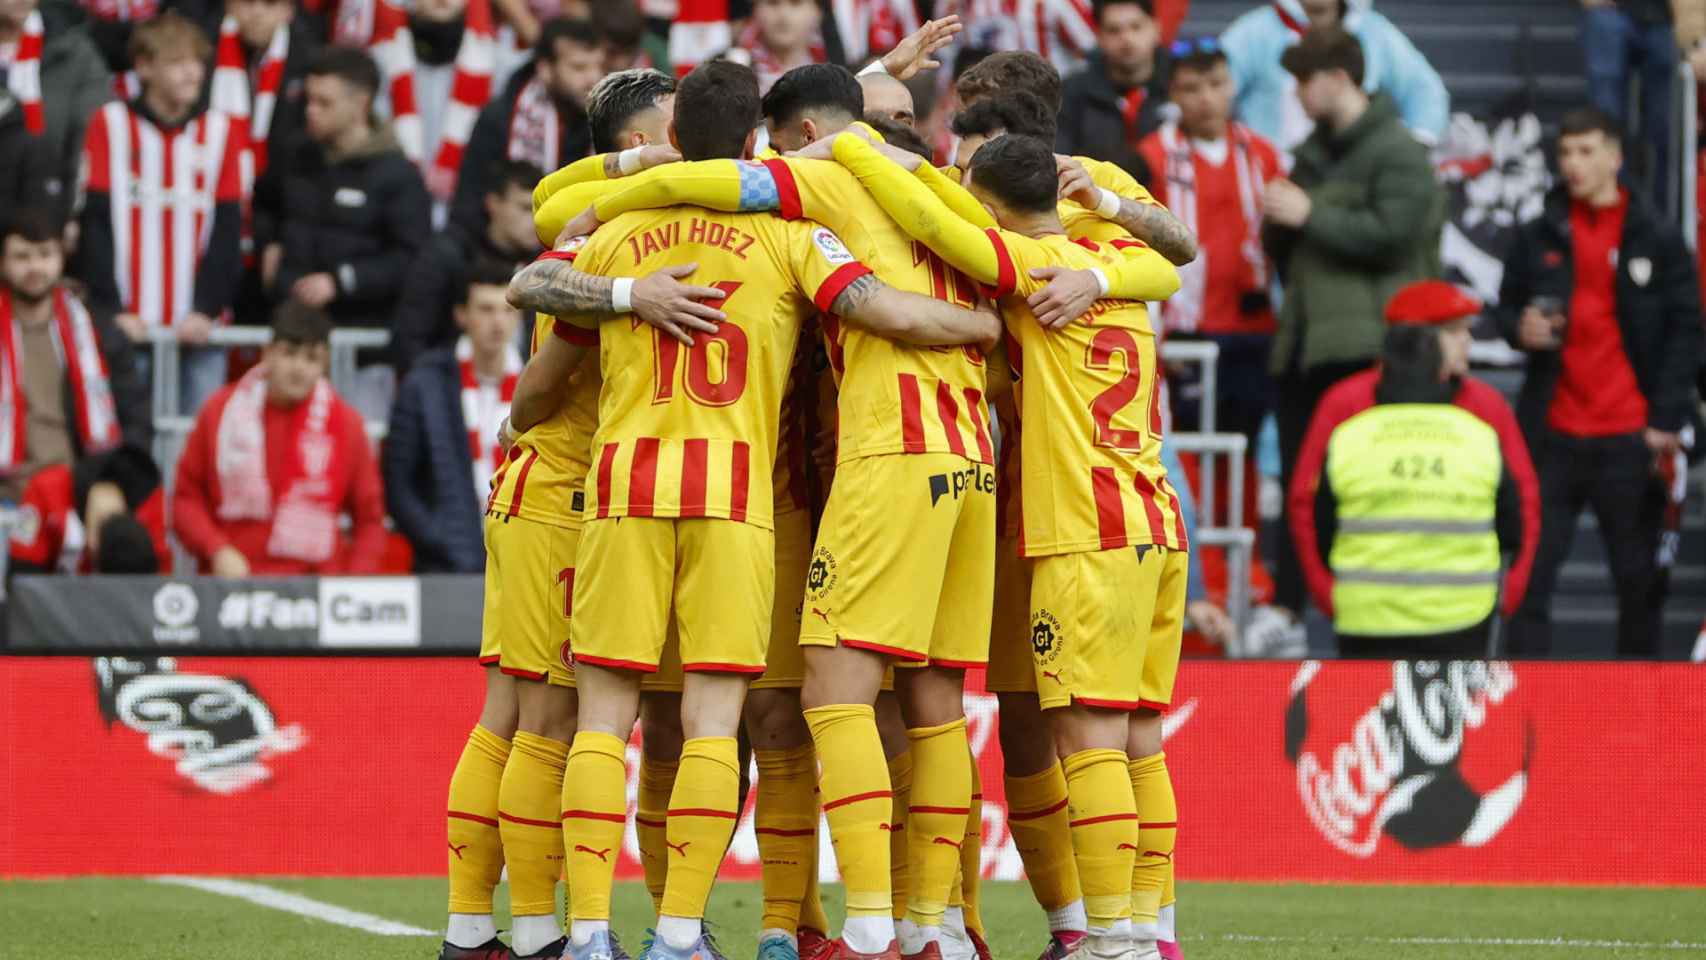 Piña de los jugadores del Girona para celebrar un gol en San Mamés